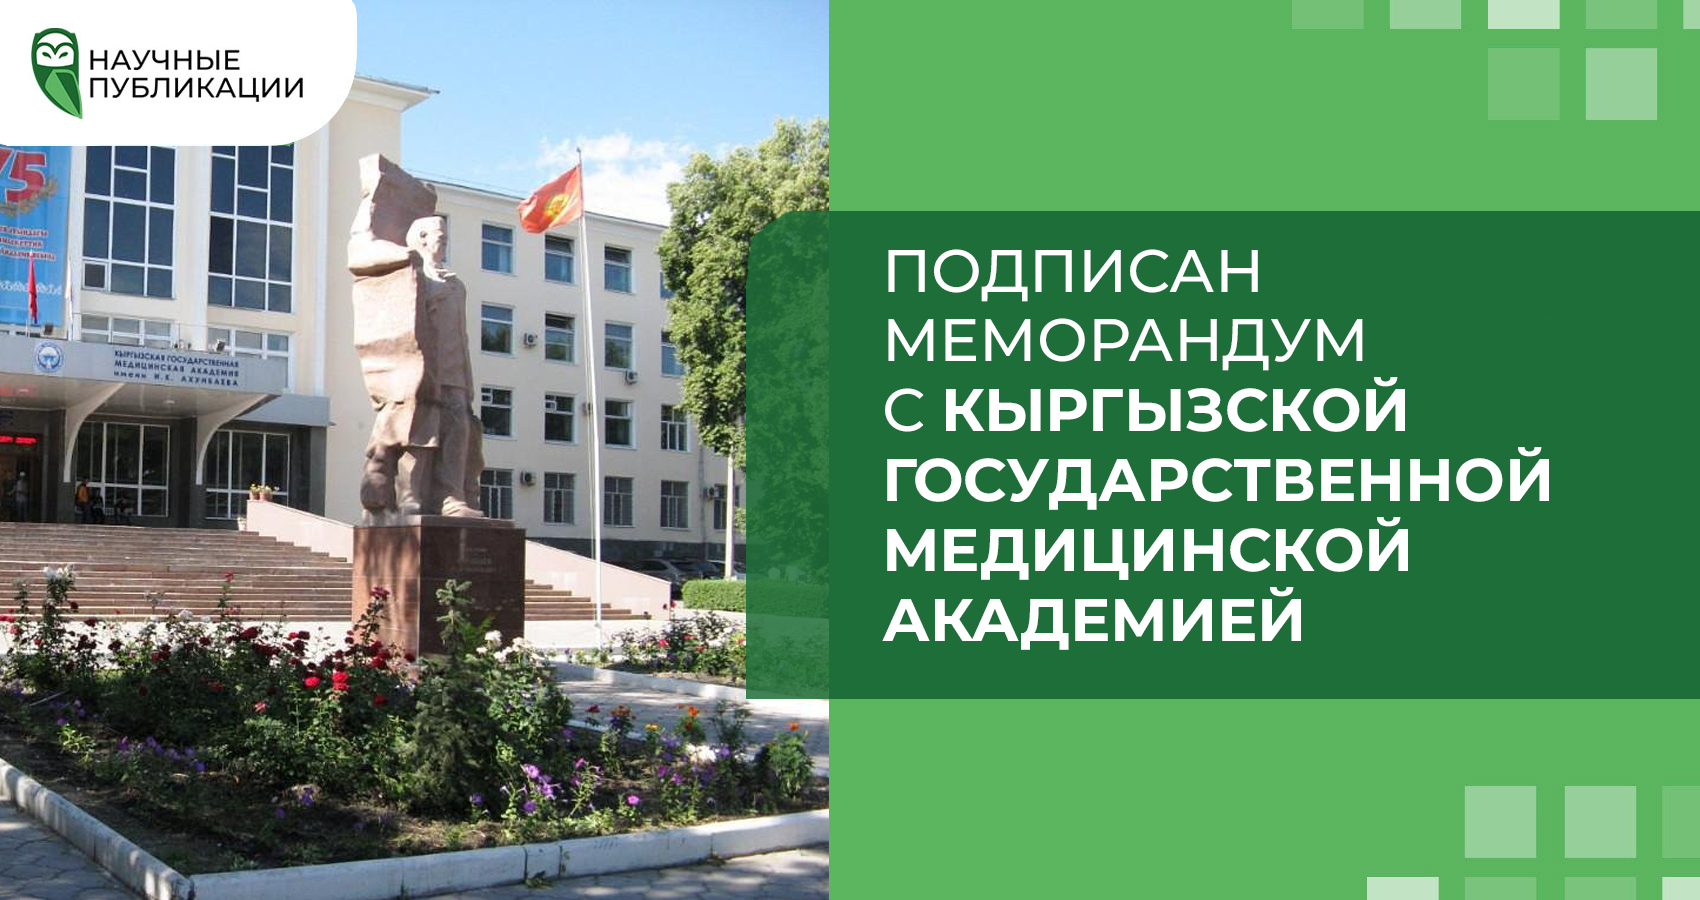 Подписан меморандум с Кыргызской Государственной Медицинской Академей 